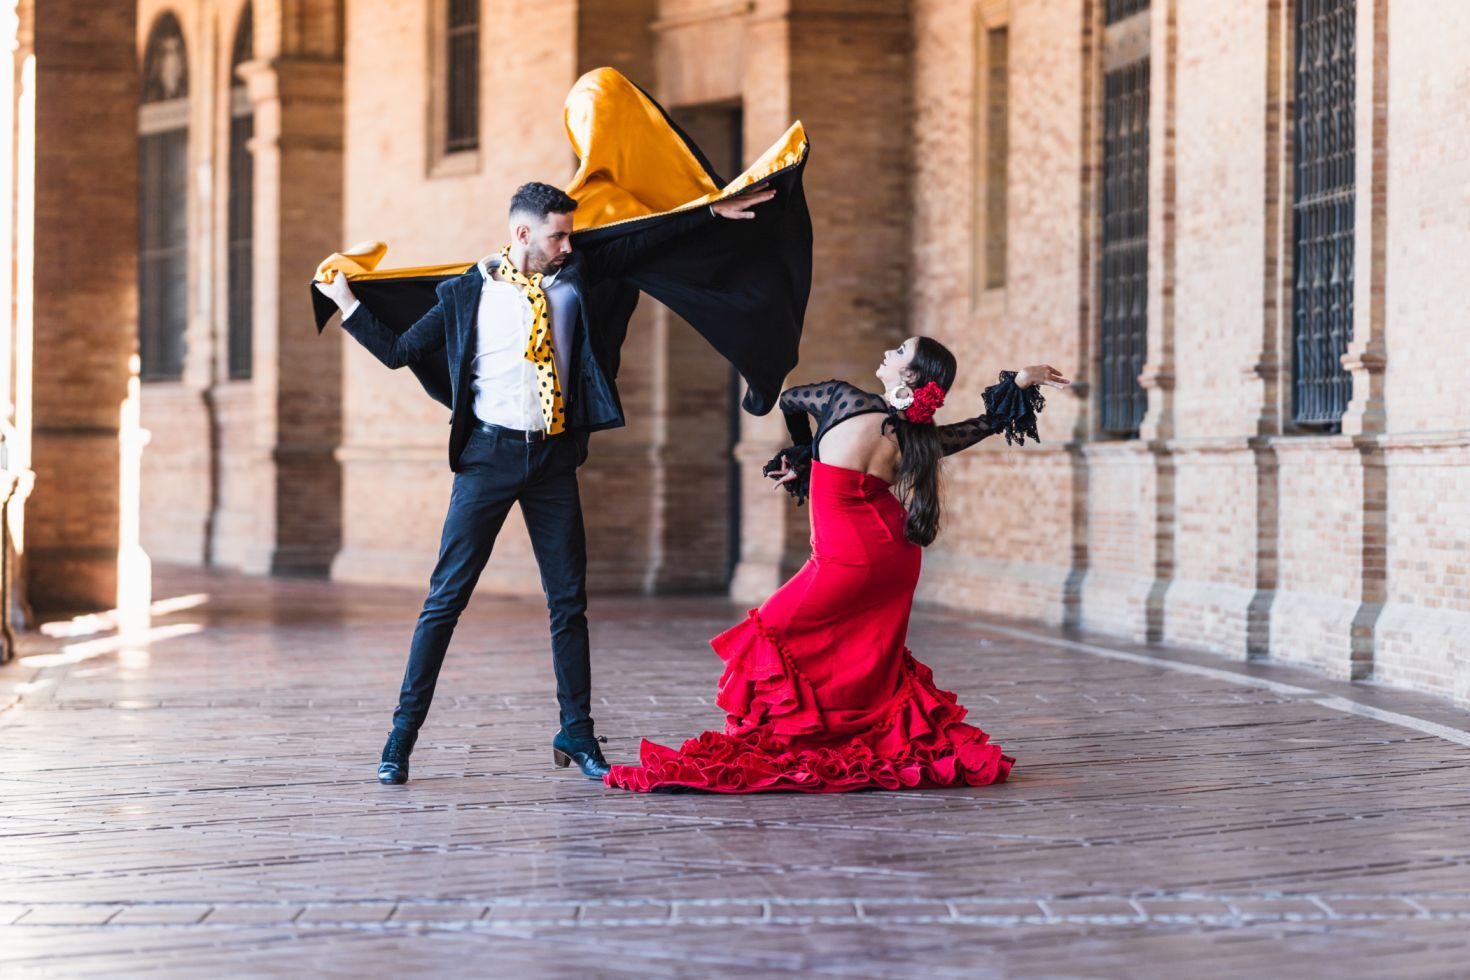 Homme et femme en costume de flamenco exécutant une danse en plein air